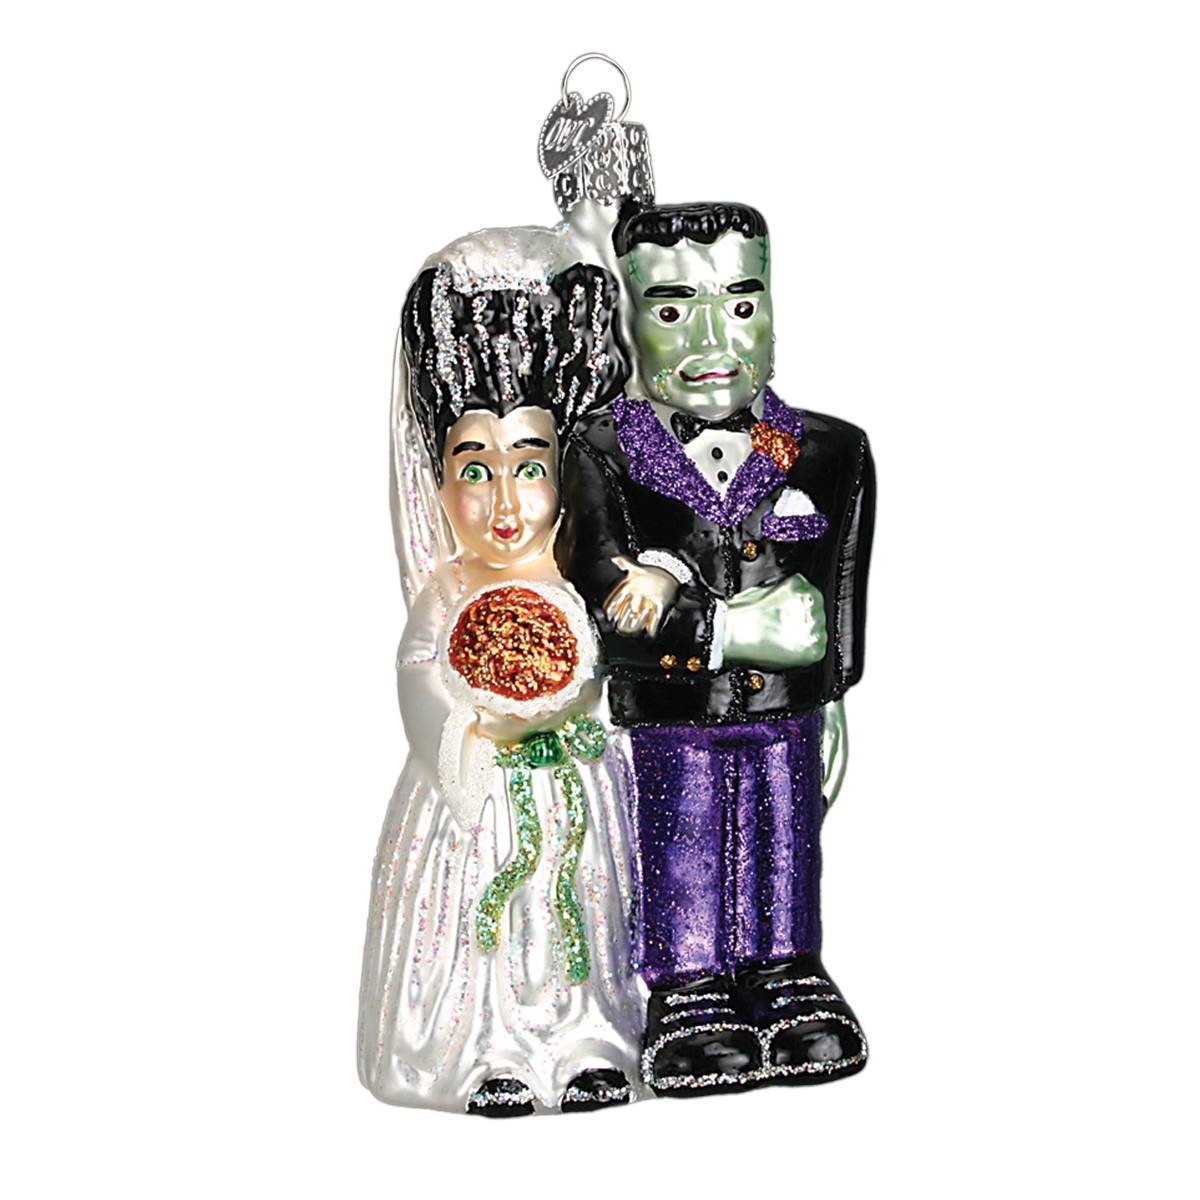 Frankenstein & Bride Ornament